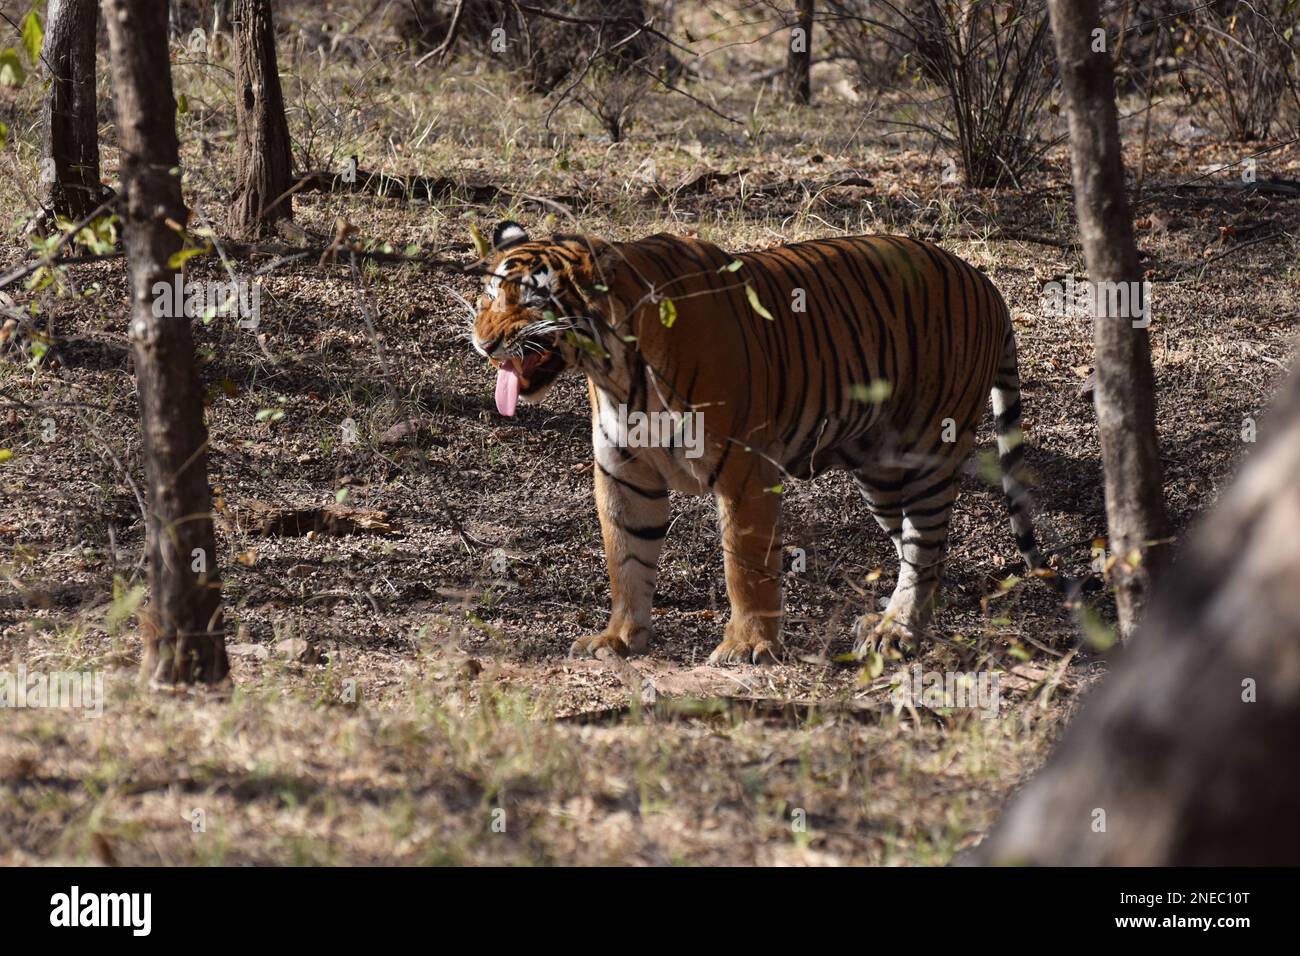 Un tigre du Bengale mâle sauvage tirant sa langue dans les forêts de la réserve de tigres de Ranthambore, située à Sawai Madhopur Banque D'Images